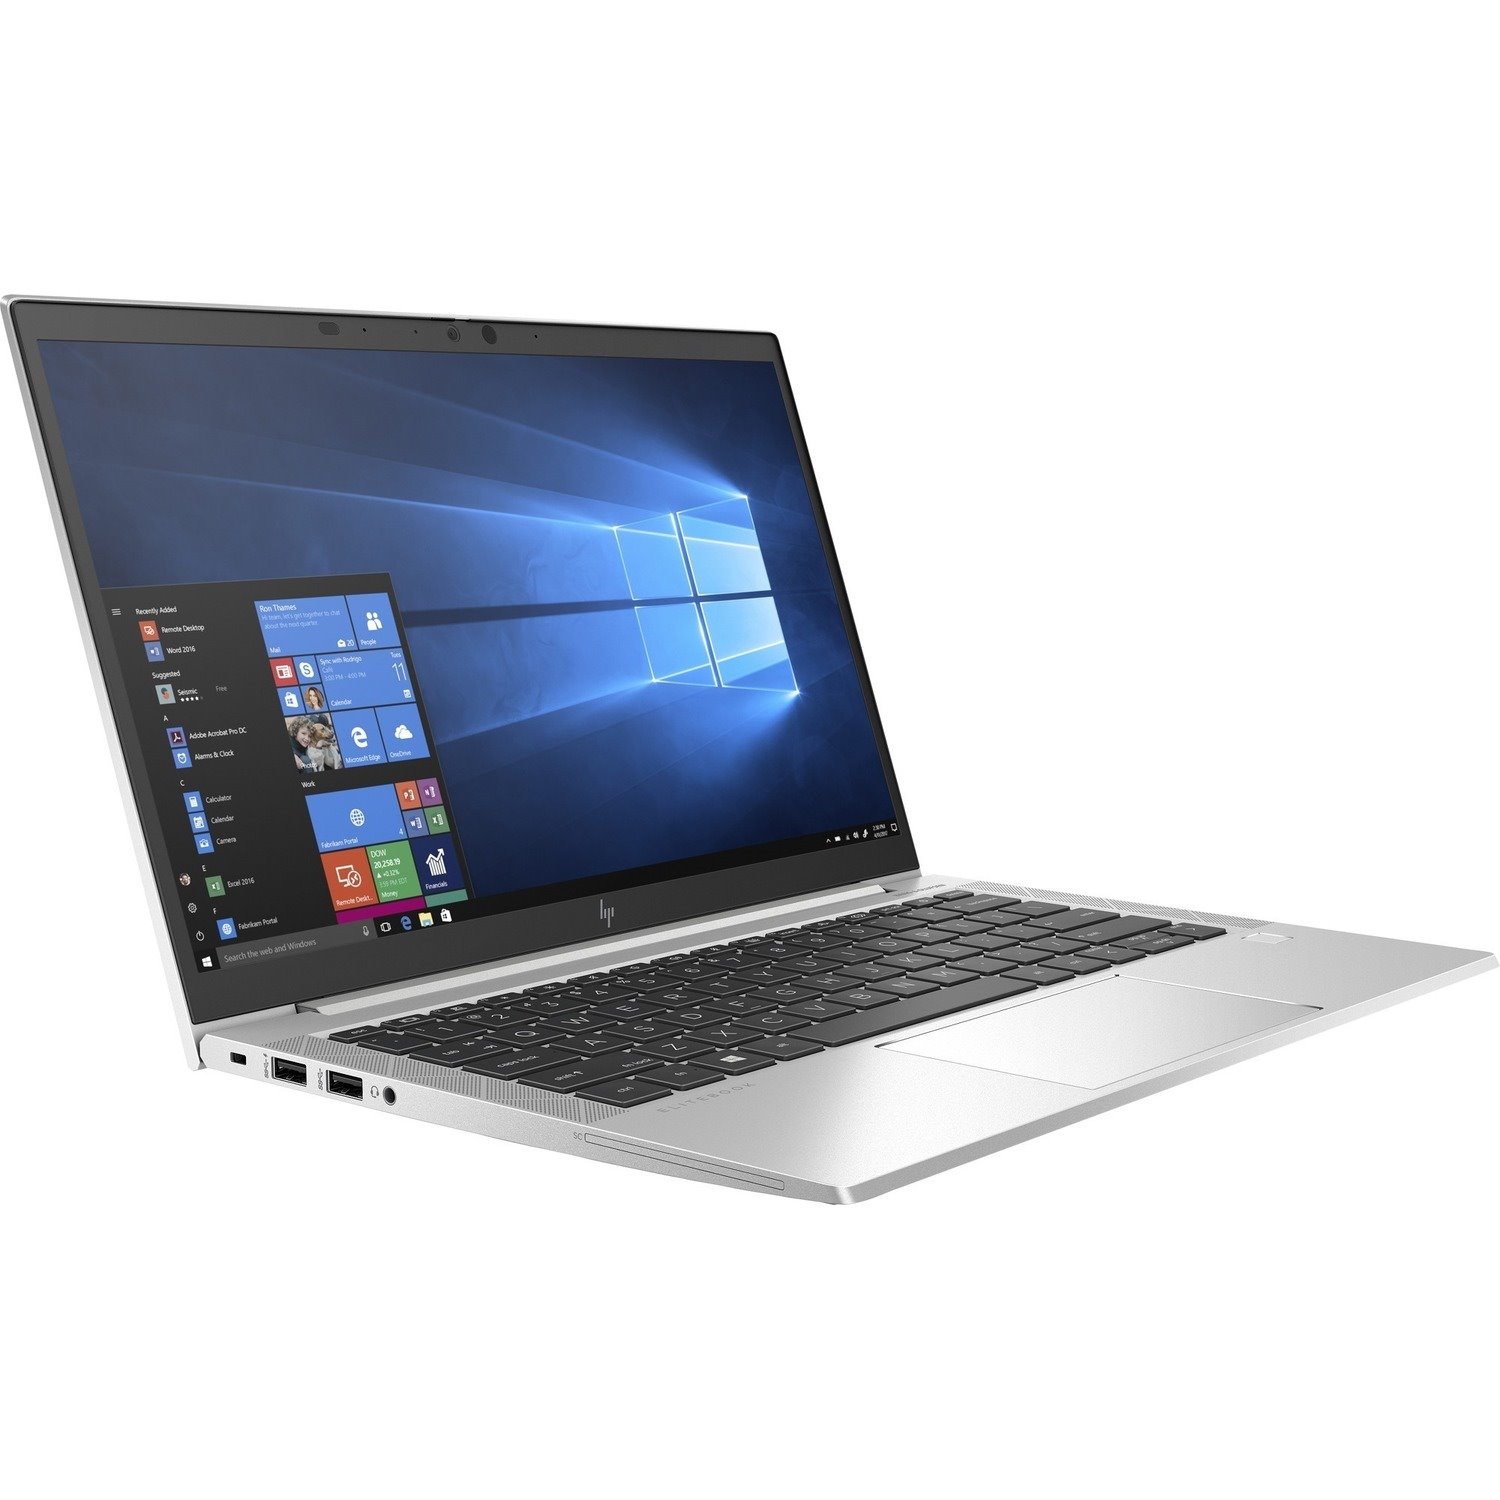 HP EliteBook 830 G7 33.8 cm (13.3") Notebook - Full HD - 1920 x 1080 - Intel Core i5 10th Gen i5-10210U Quad-core (4 Core) 1.60 GHz - 16 GB Total RAM - 256 GB SSD